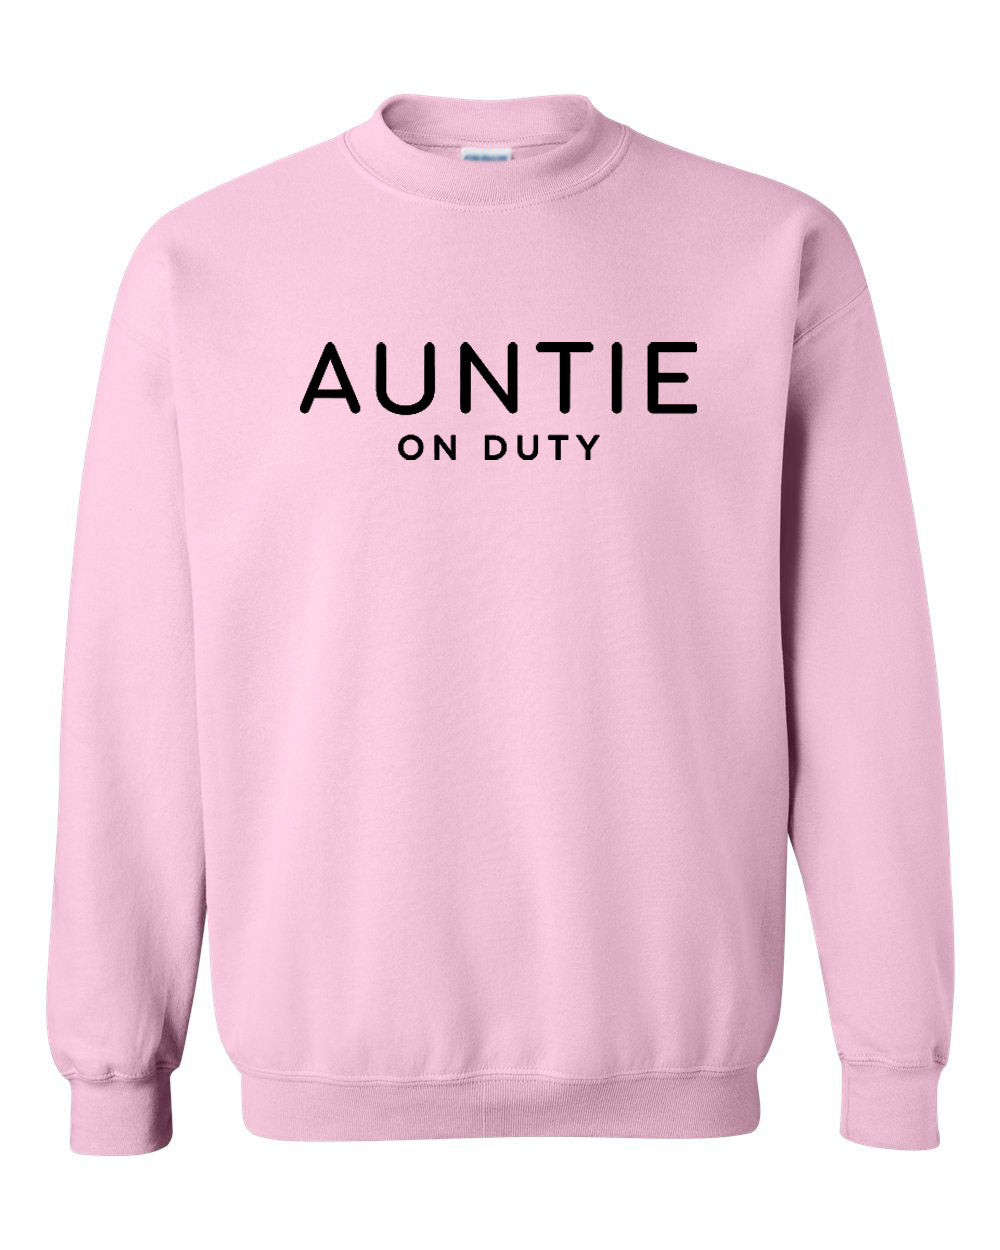 Auntie On Duty Sweatshirt